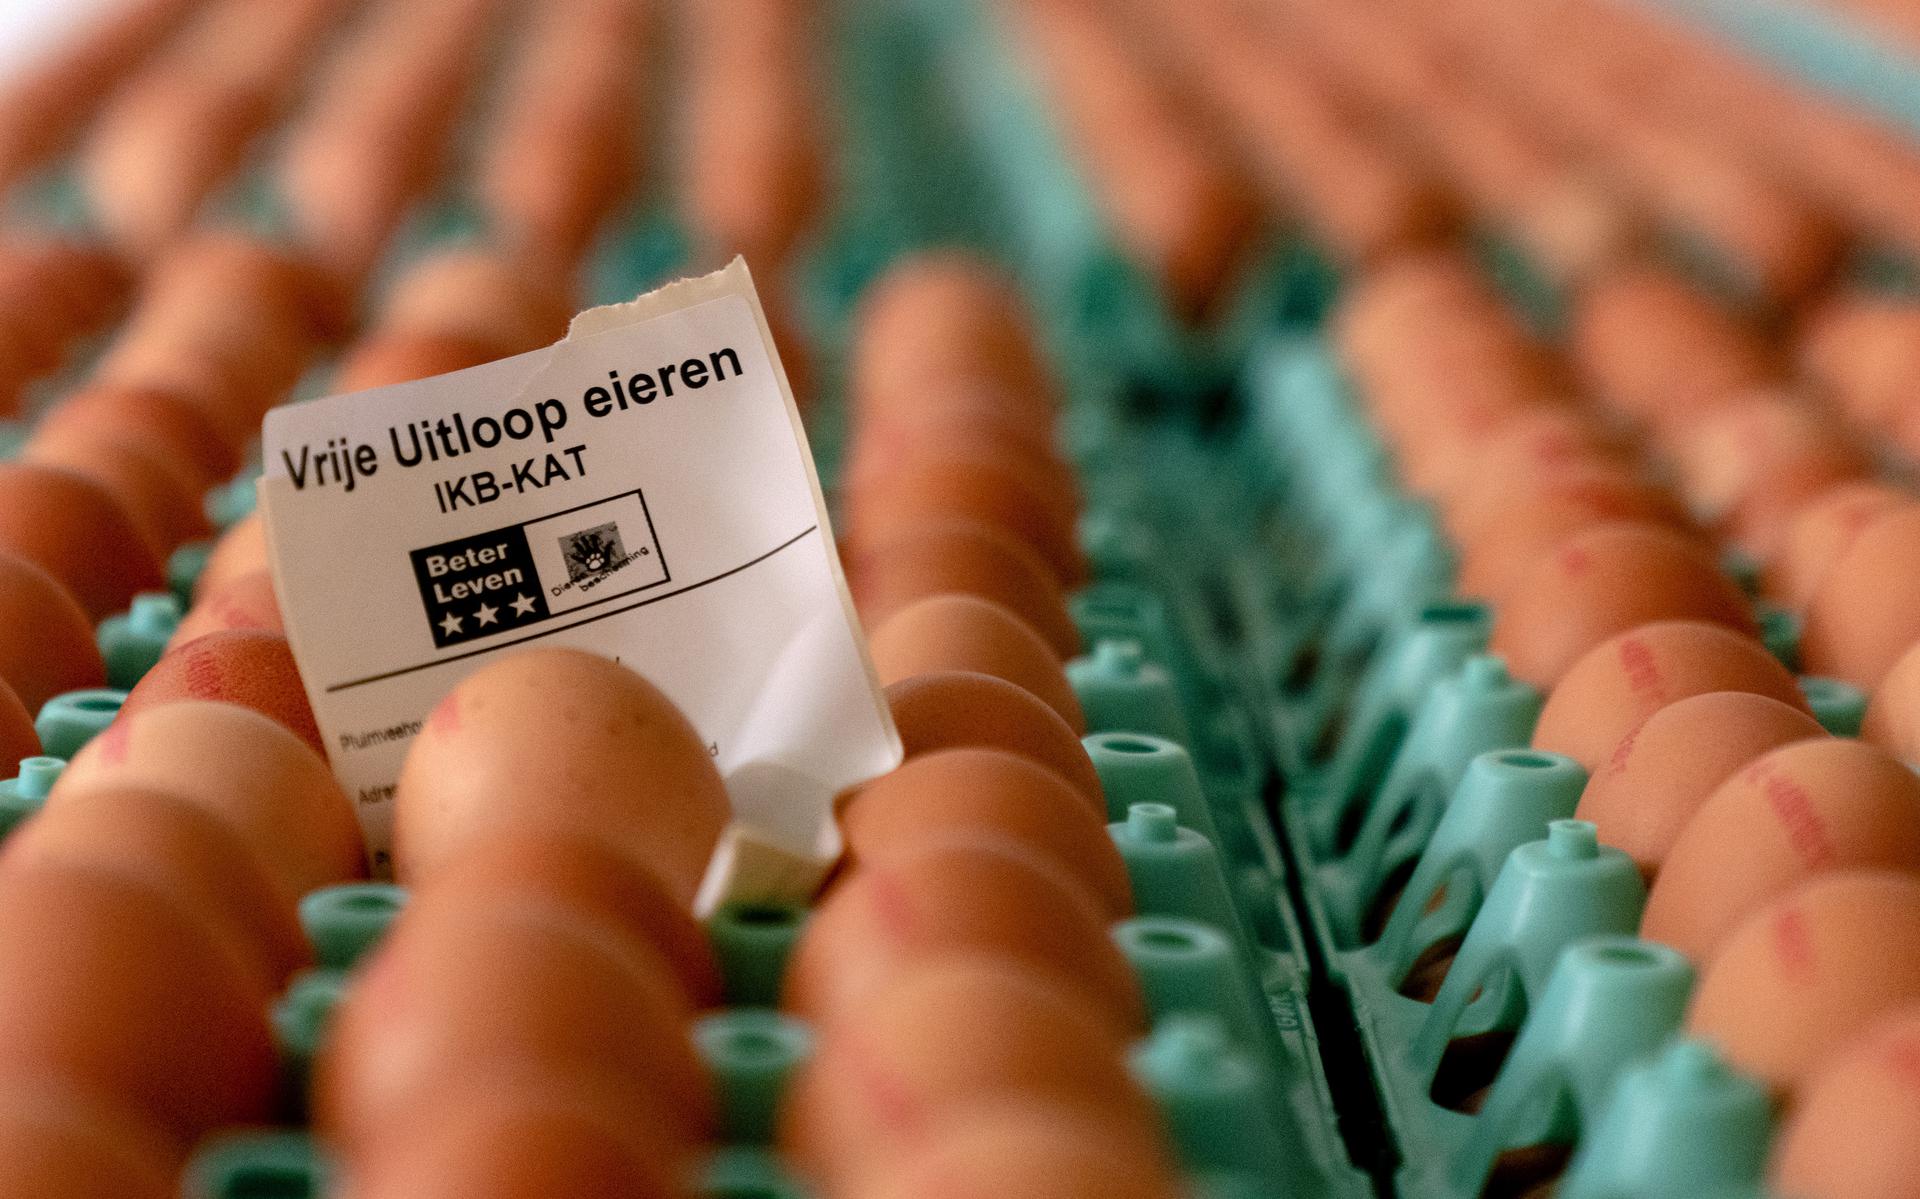 Hoge eierenprijzen slecht nieuws voor biologische pluimveehouders. 